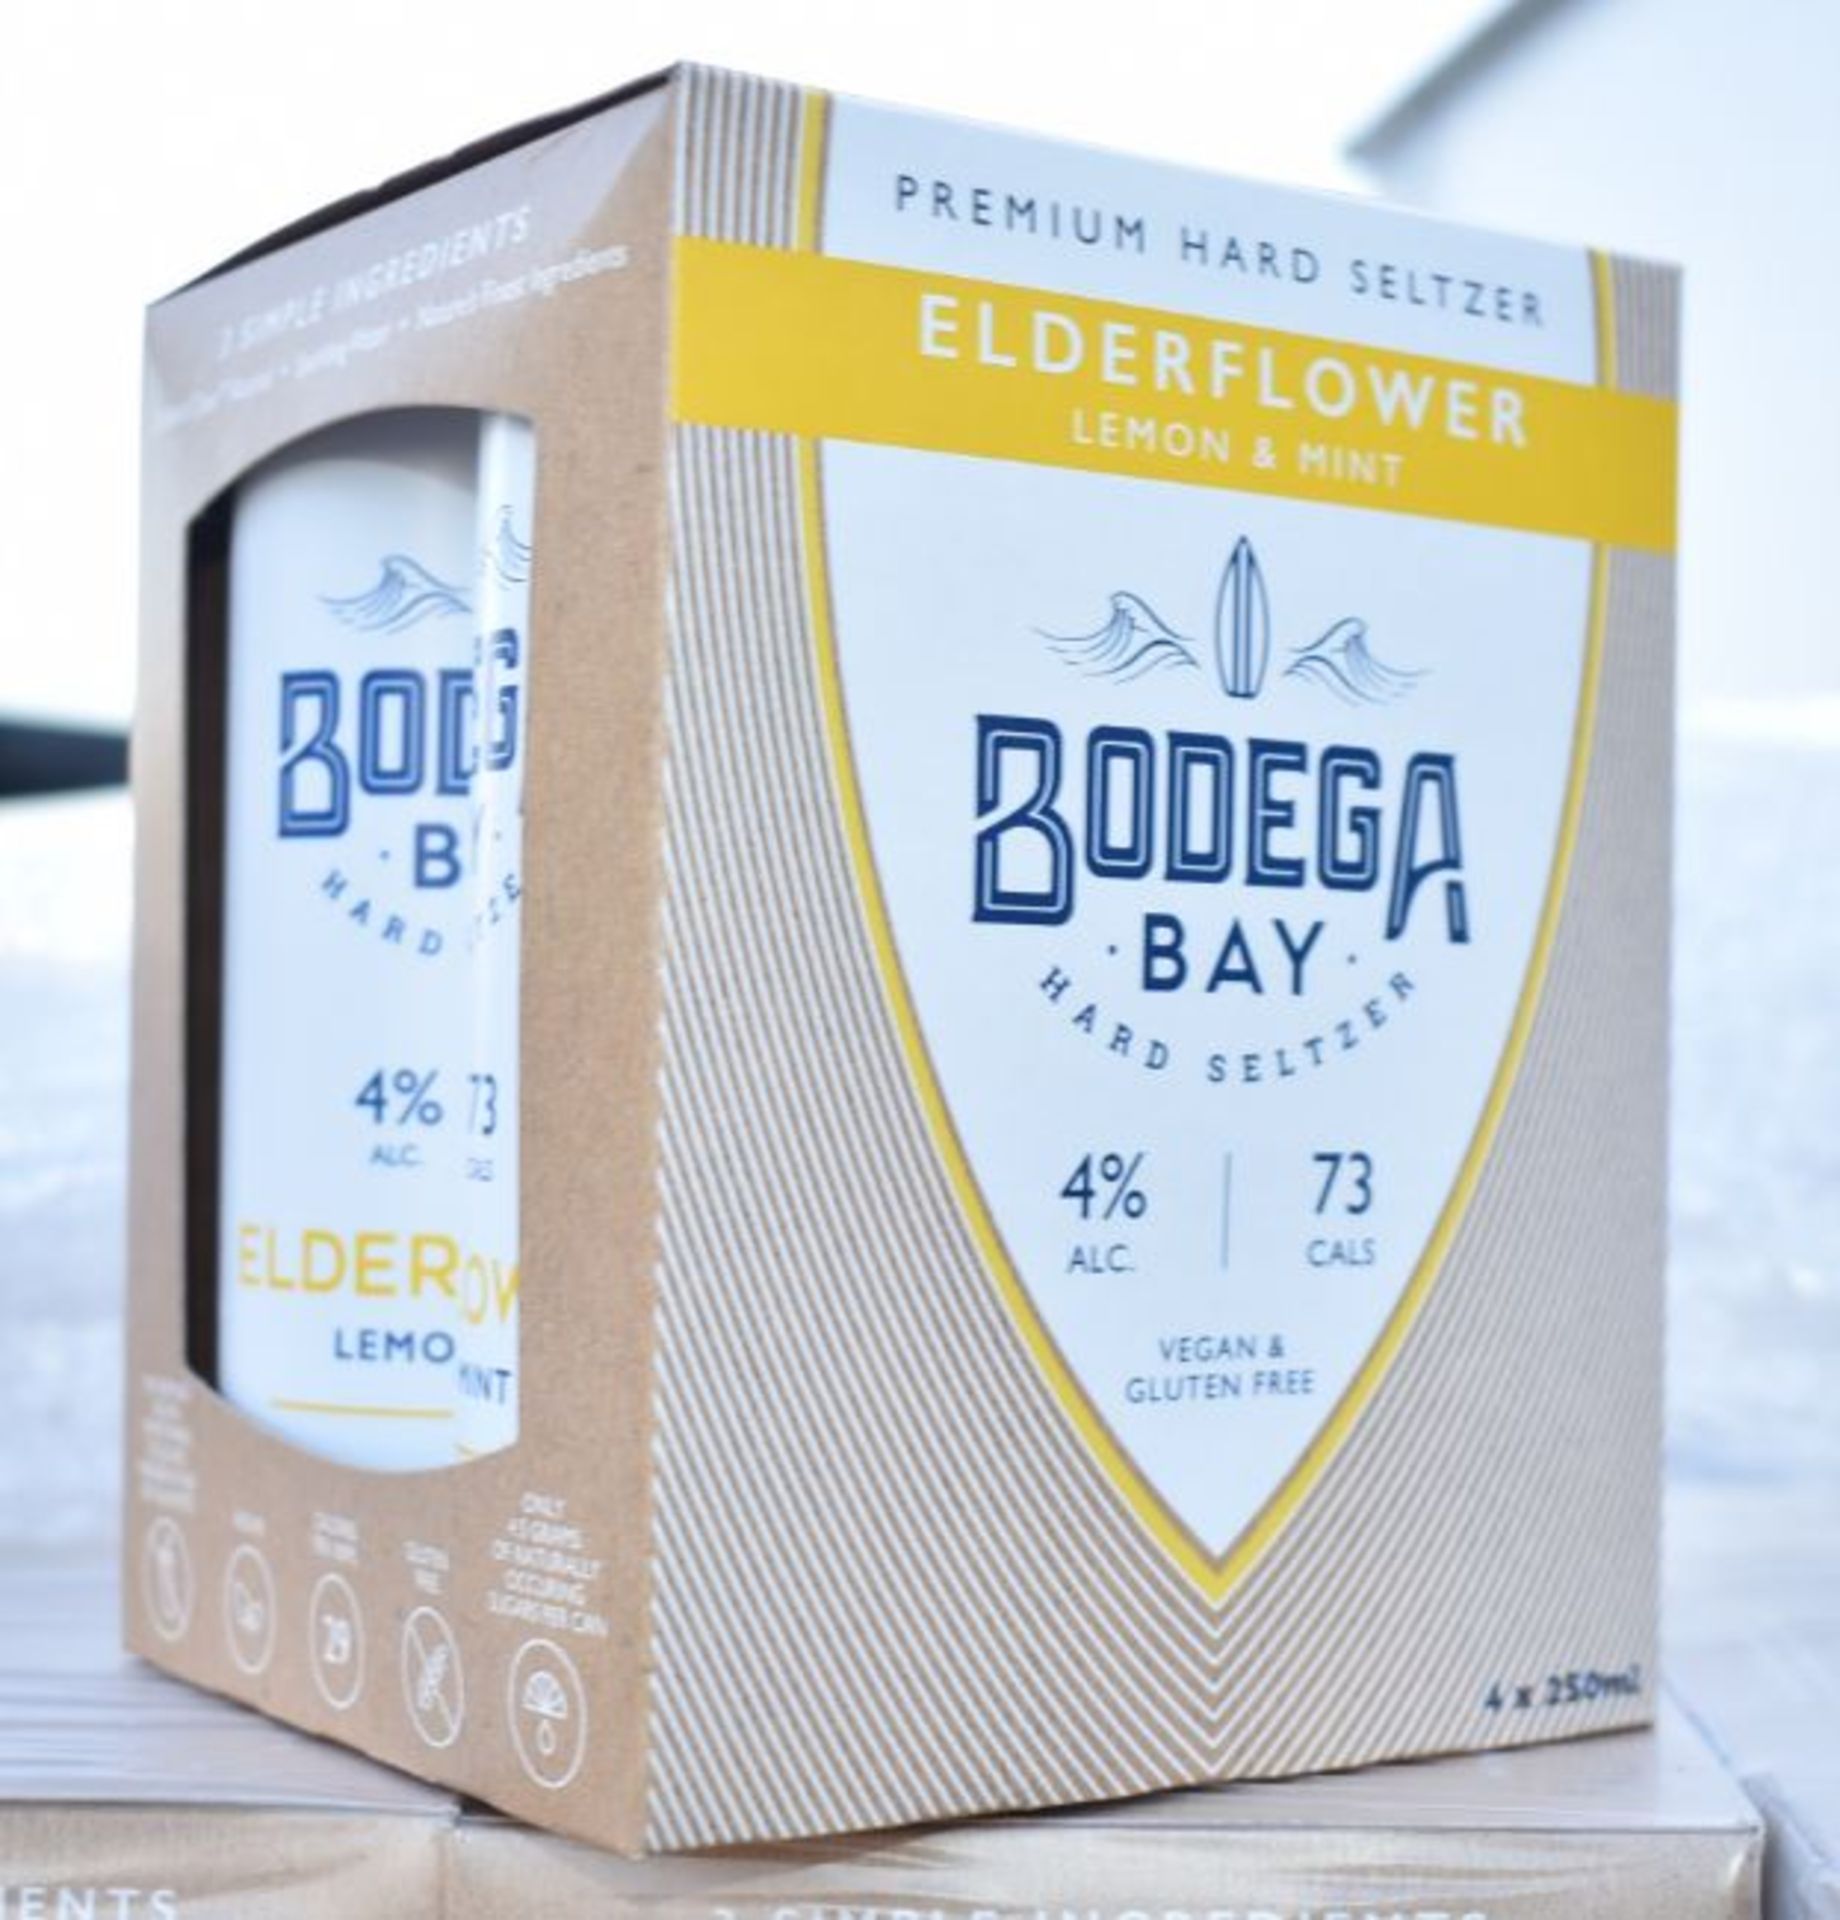 24 x Bodega Bay Hard Seltzer 250ml Alcoholic Sparkling Water Drinks - Elderflower Lemon & Mint - Image 4 of 9